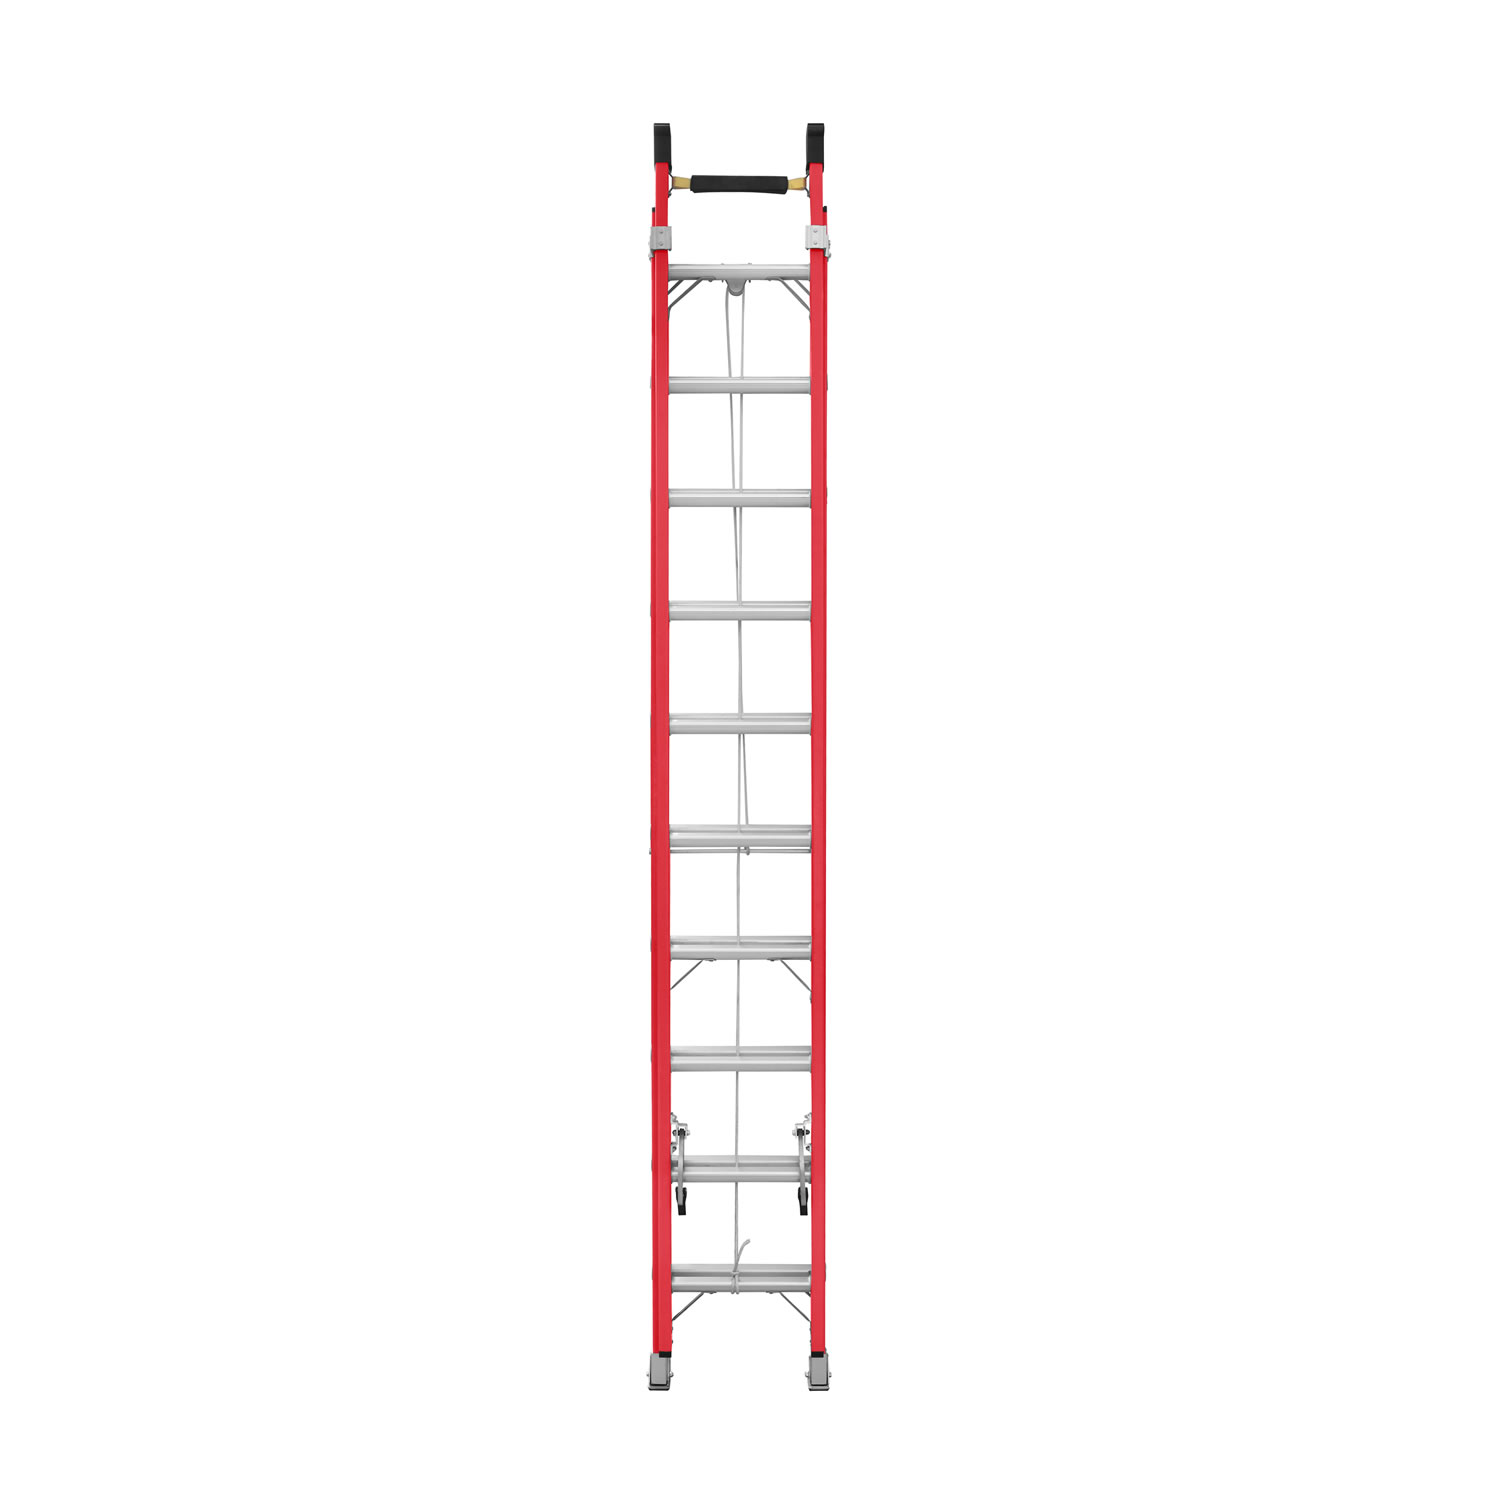 Comprar Escalera de aluminio extensible a cuerda online - Escaleras Arizona